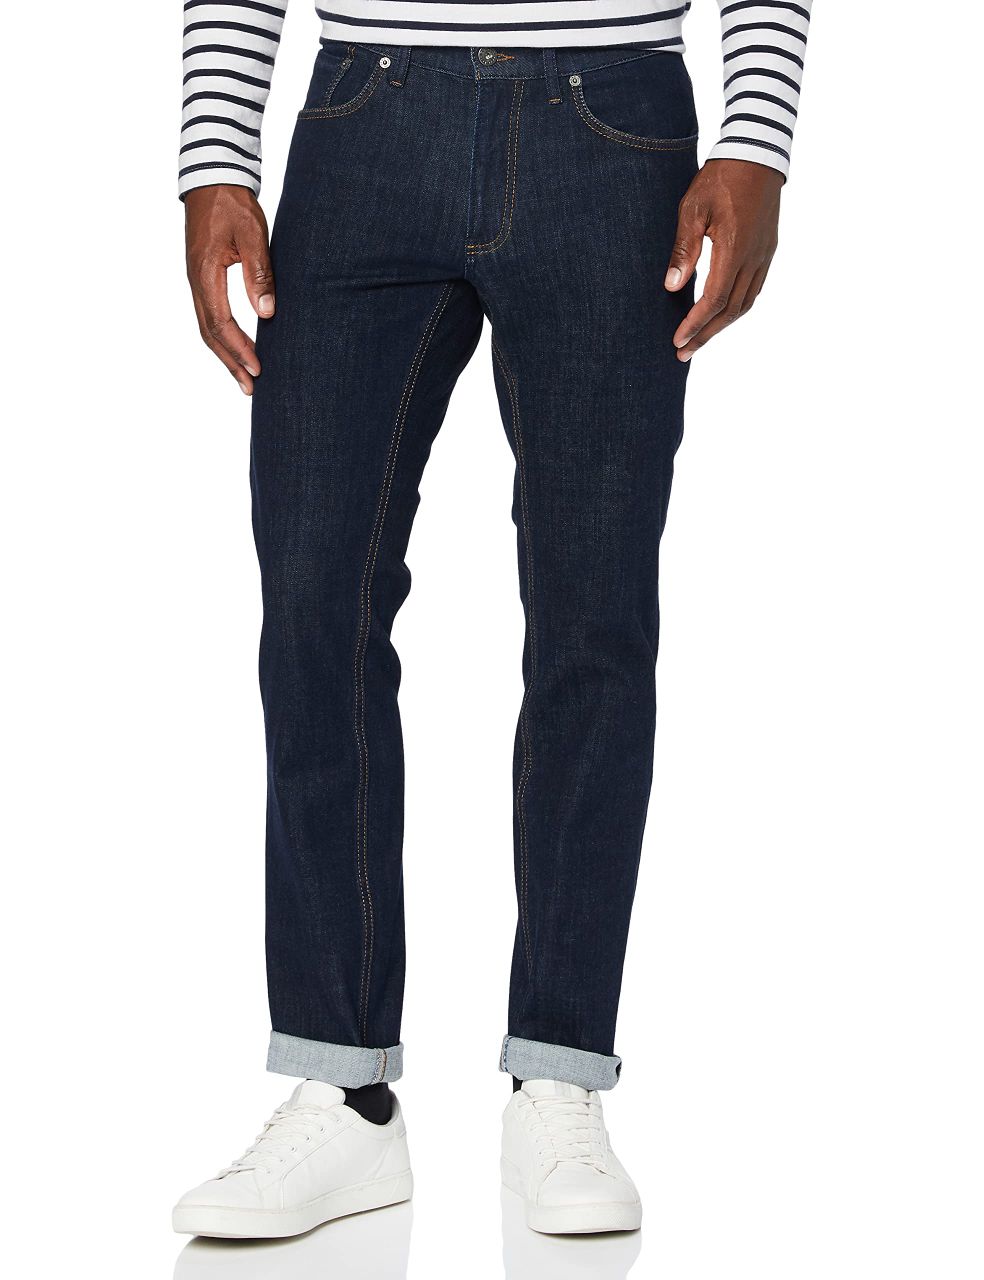 BRAX Herren Slim Fit Jeans Hose Style Chuck Hi-Flex Stretch Baumwolle 